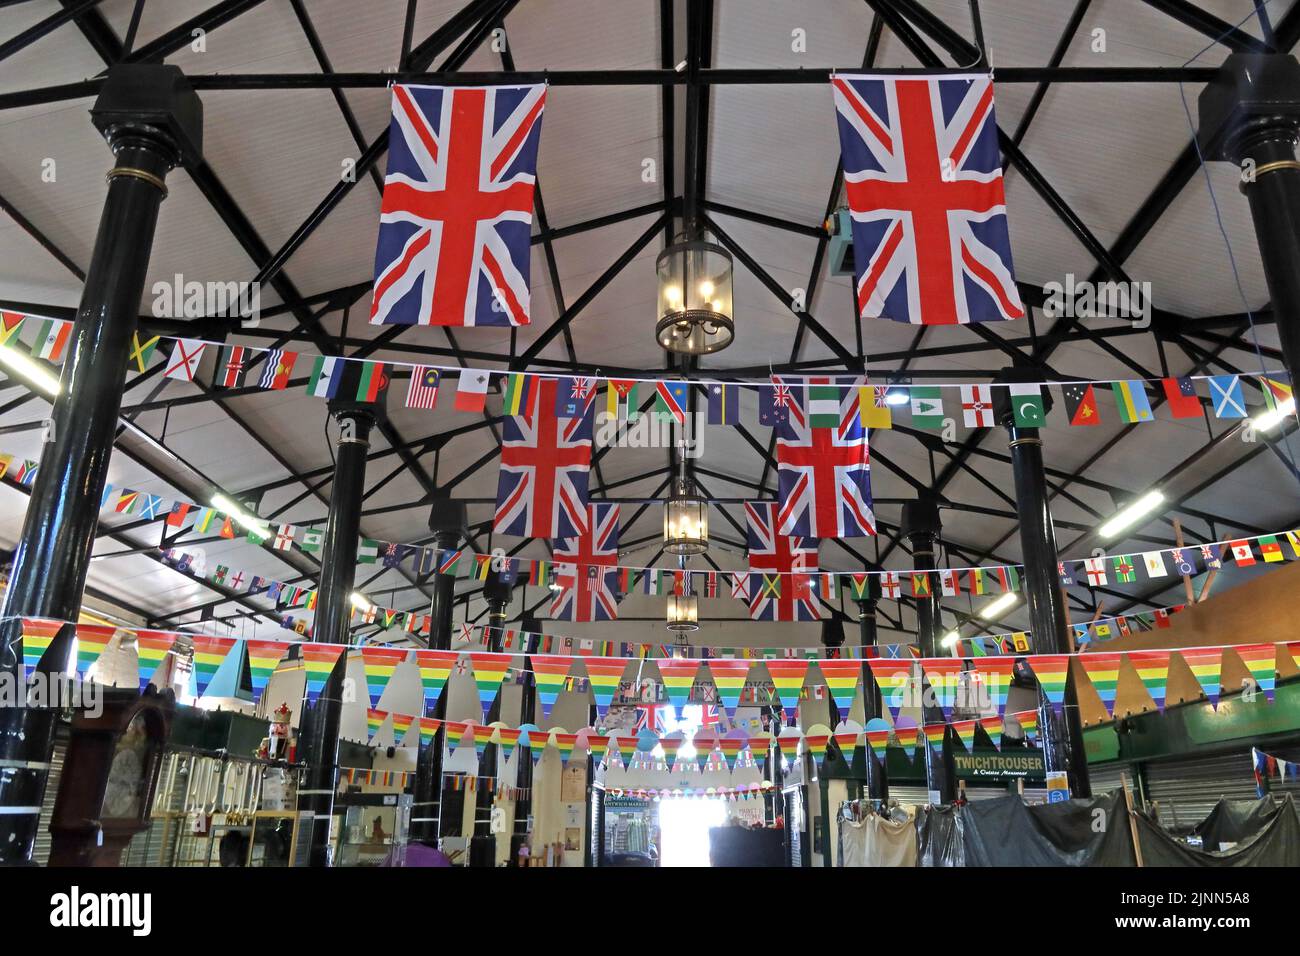 Intérieur du marché de Nantwich, Market Street, Nantwich, Cheshire, Angleterre, Royaume-Uni, CW5 5DG, drapeaux pour le jubilé des reines 2022 Banque D'Images